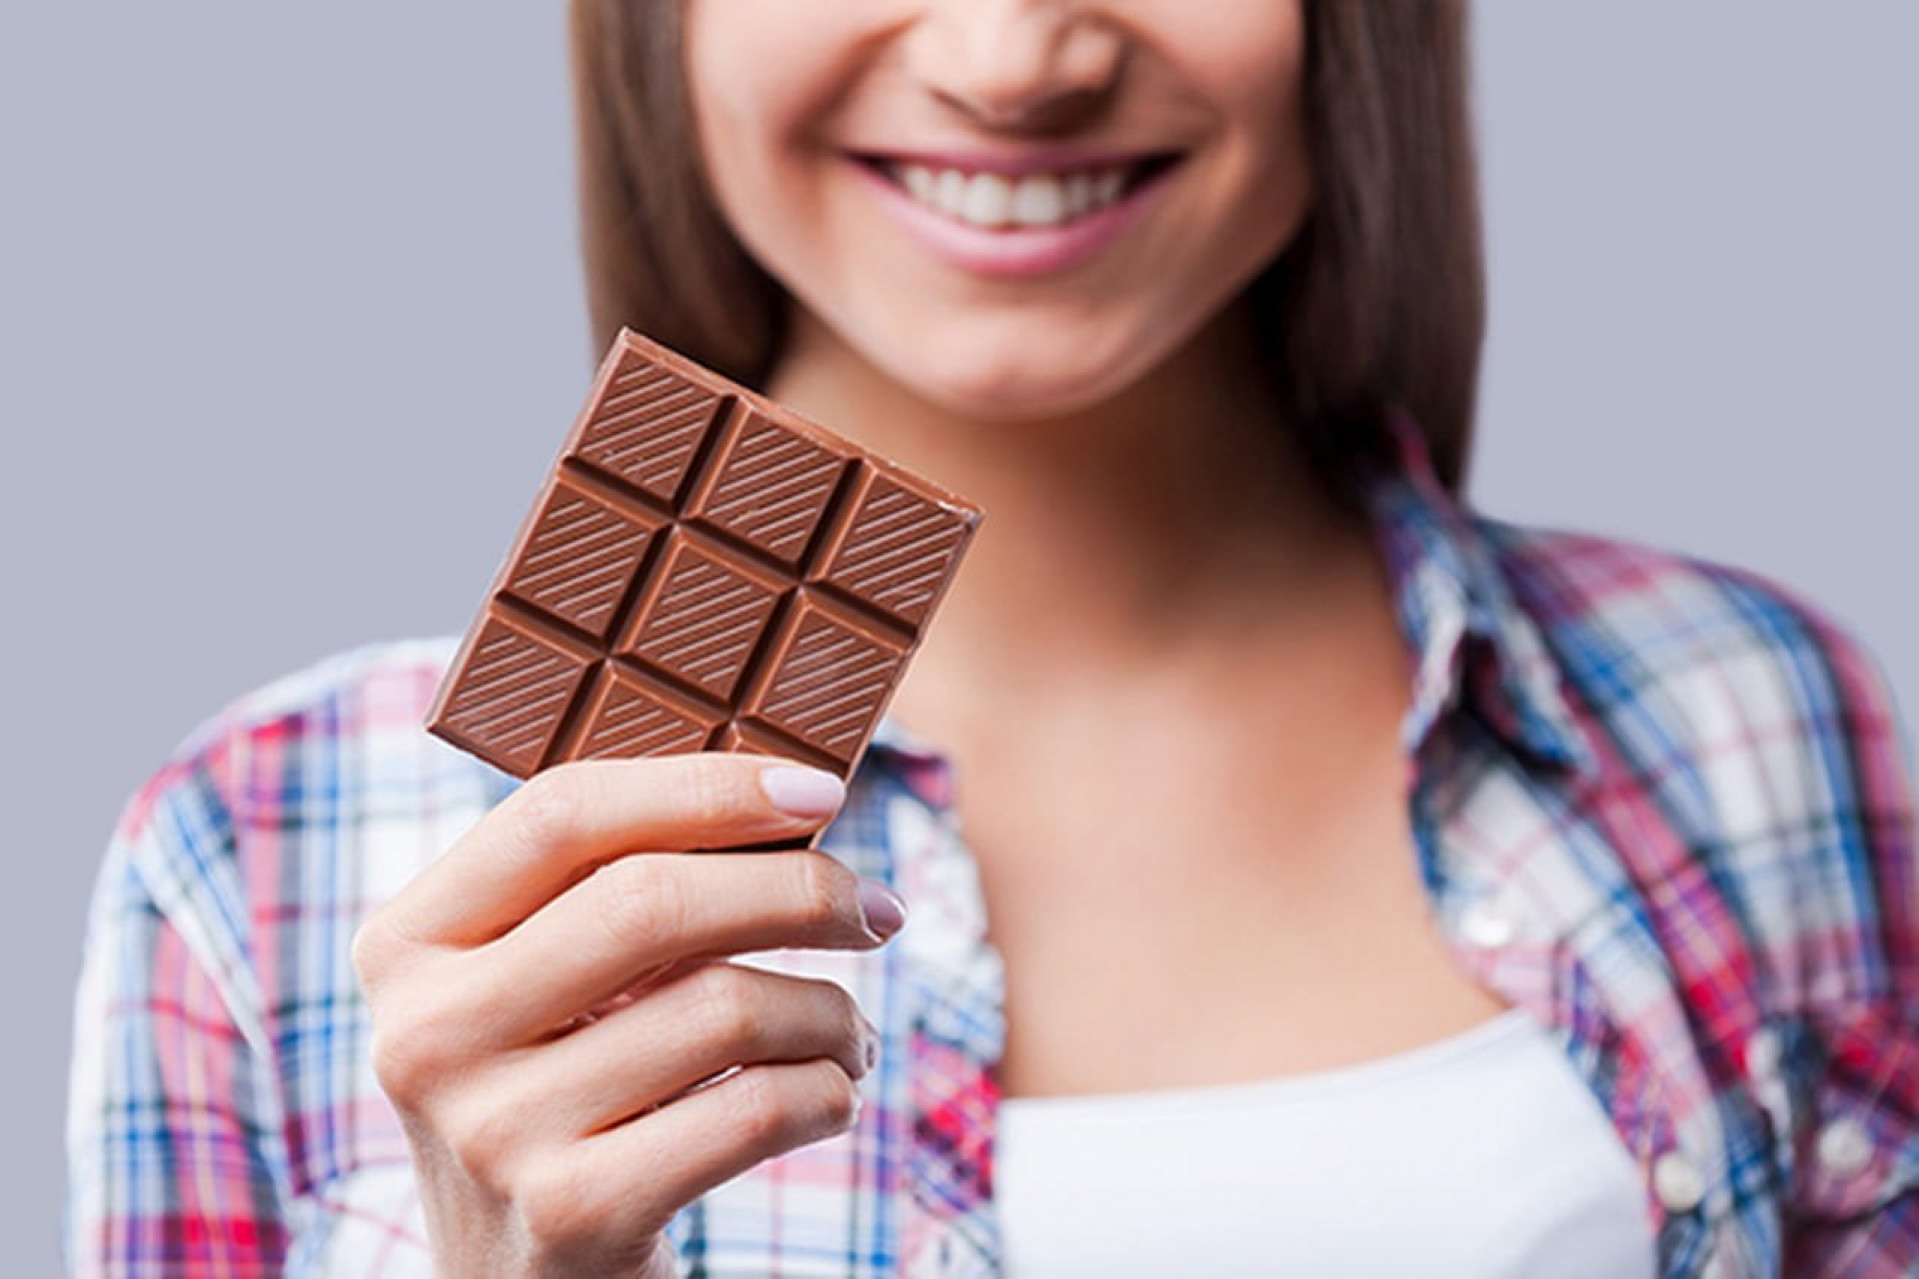 Ну шоколадку. Необычный шоколад. Плитка шоколада в руке. Шоколадка в руке. Шоколадка в руке девушки.